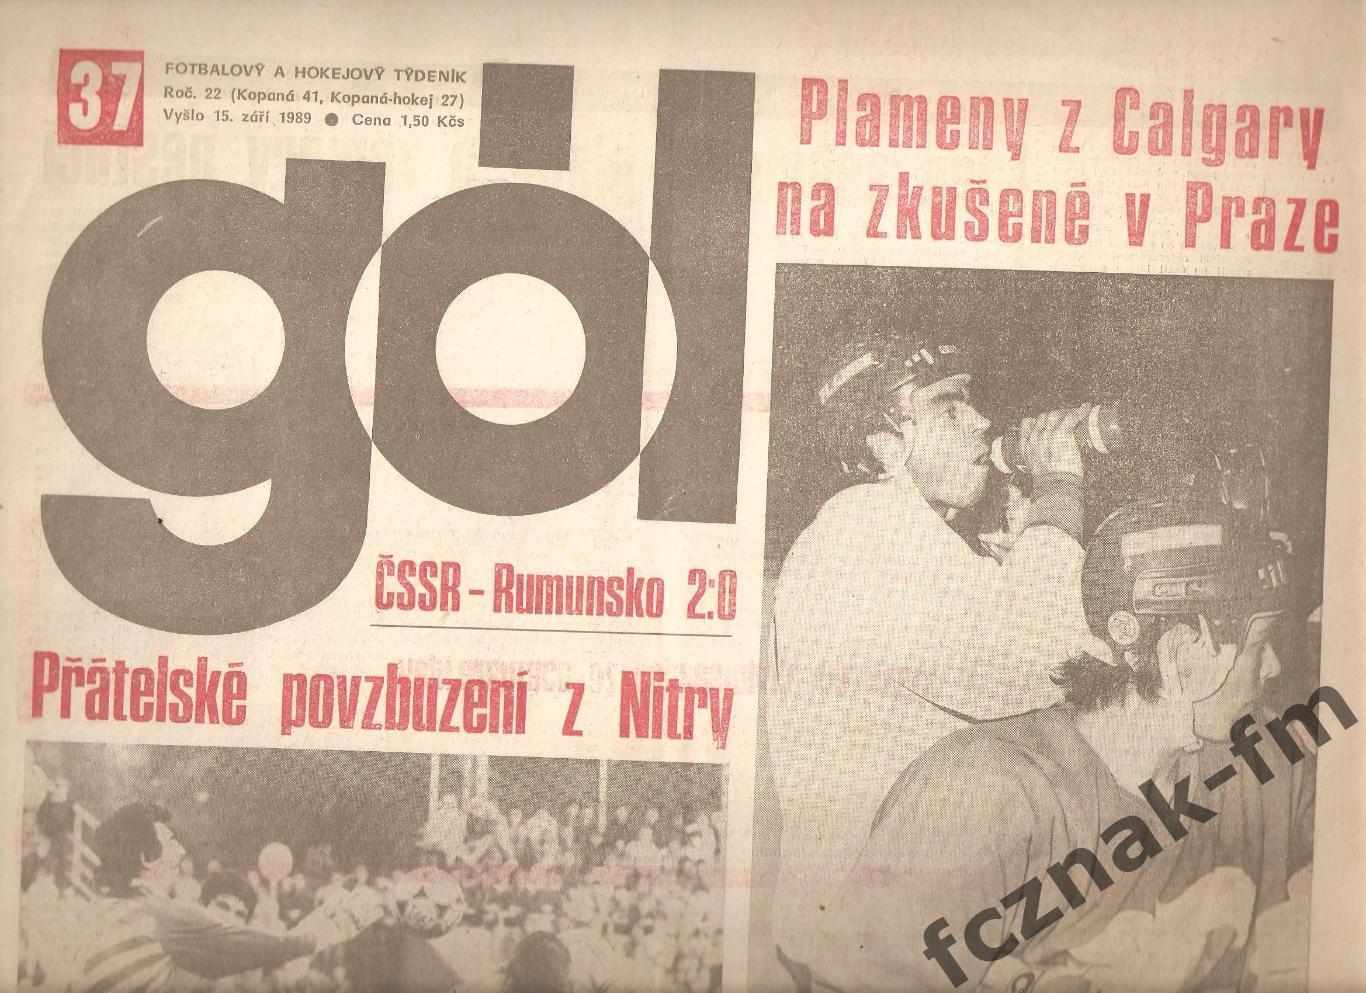 Чехословакия ГОЛ футбольное обозрение и статистика мира и Чехословакии на выбор 1